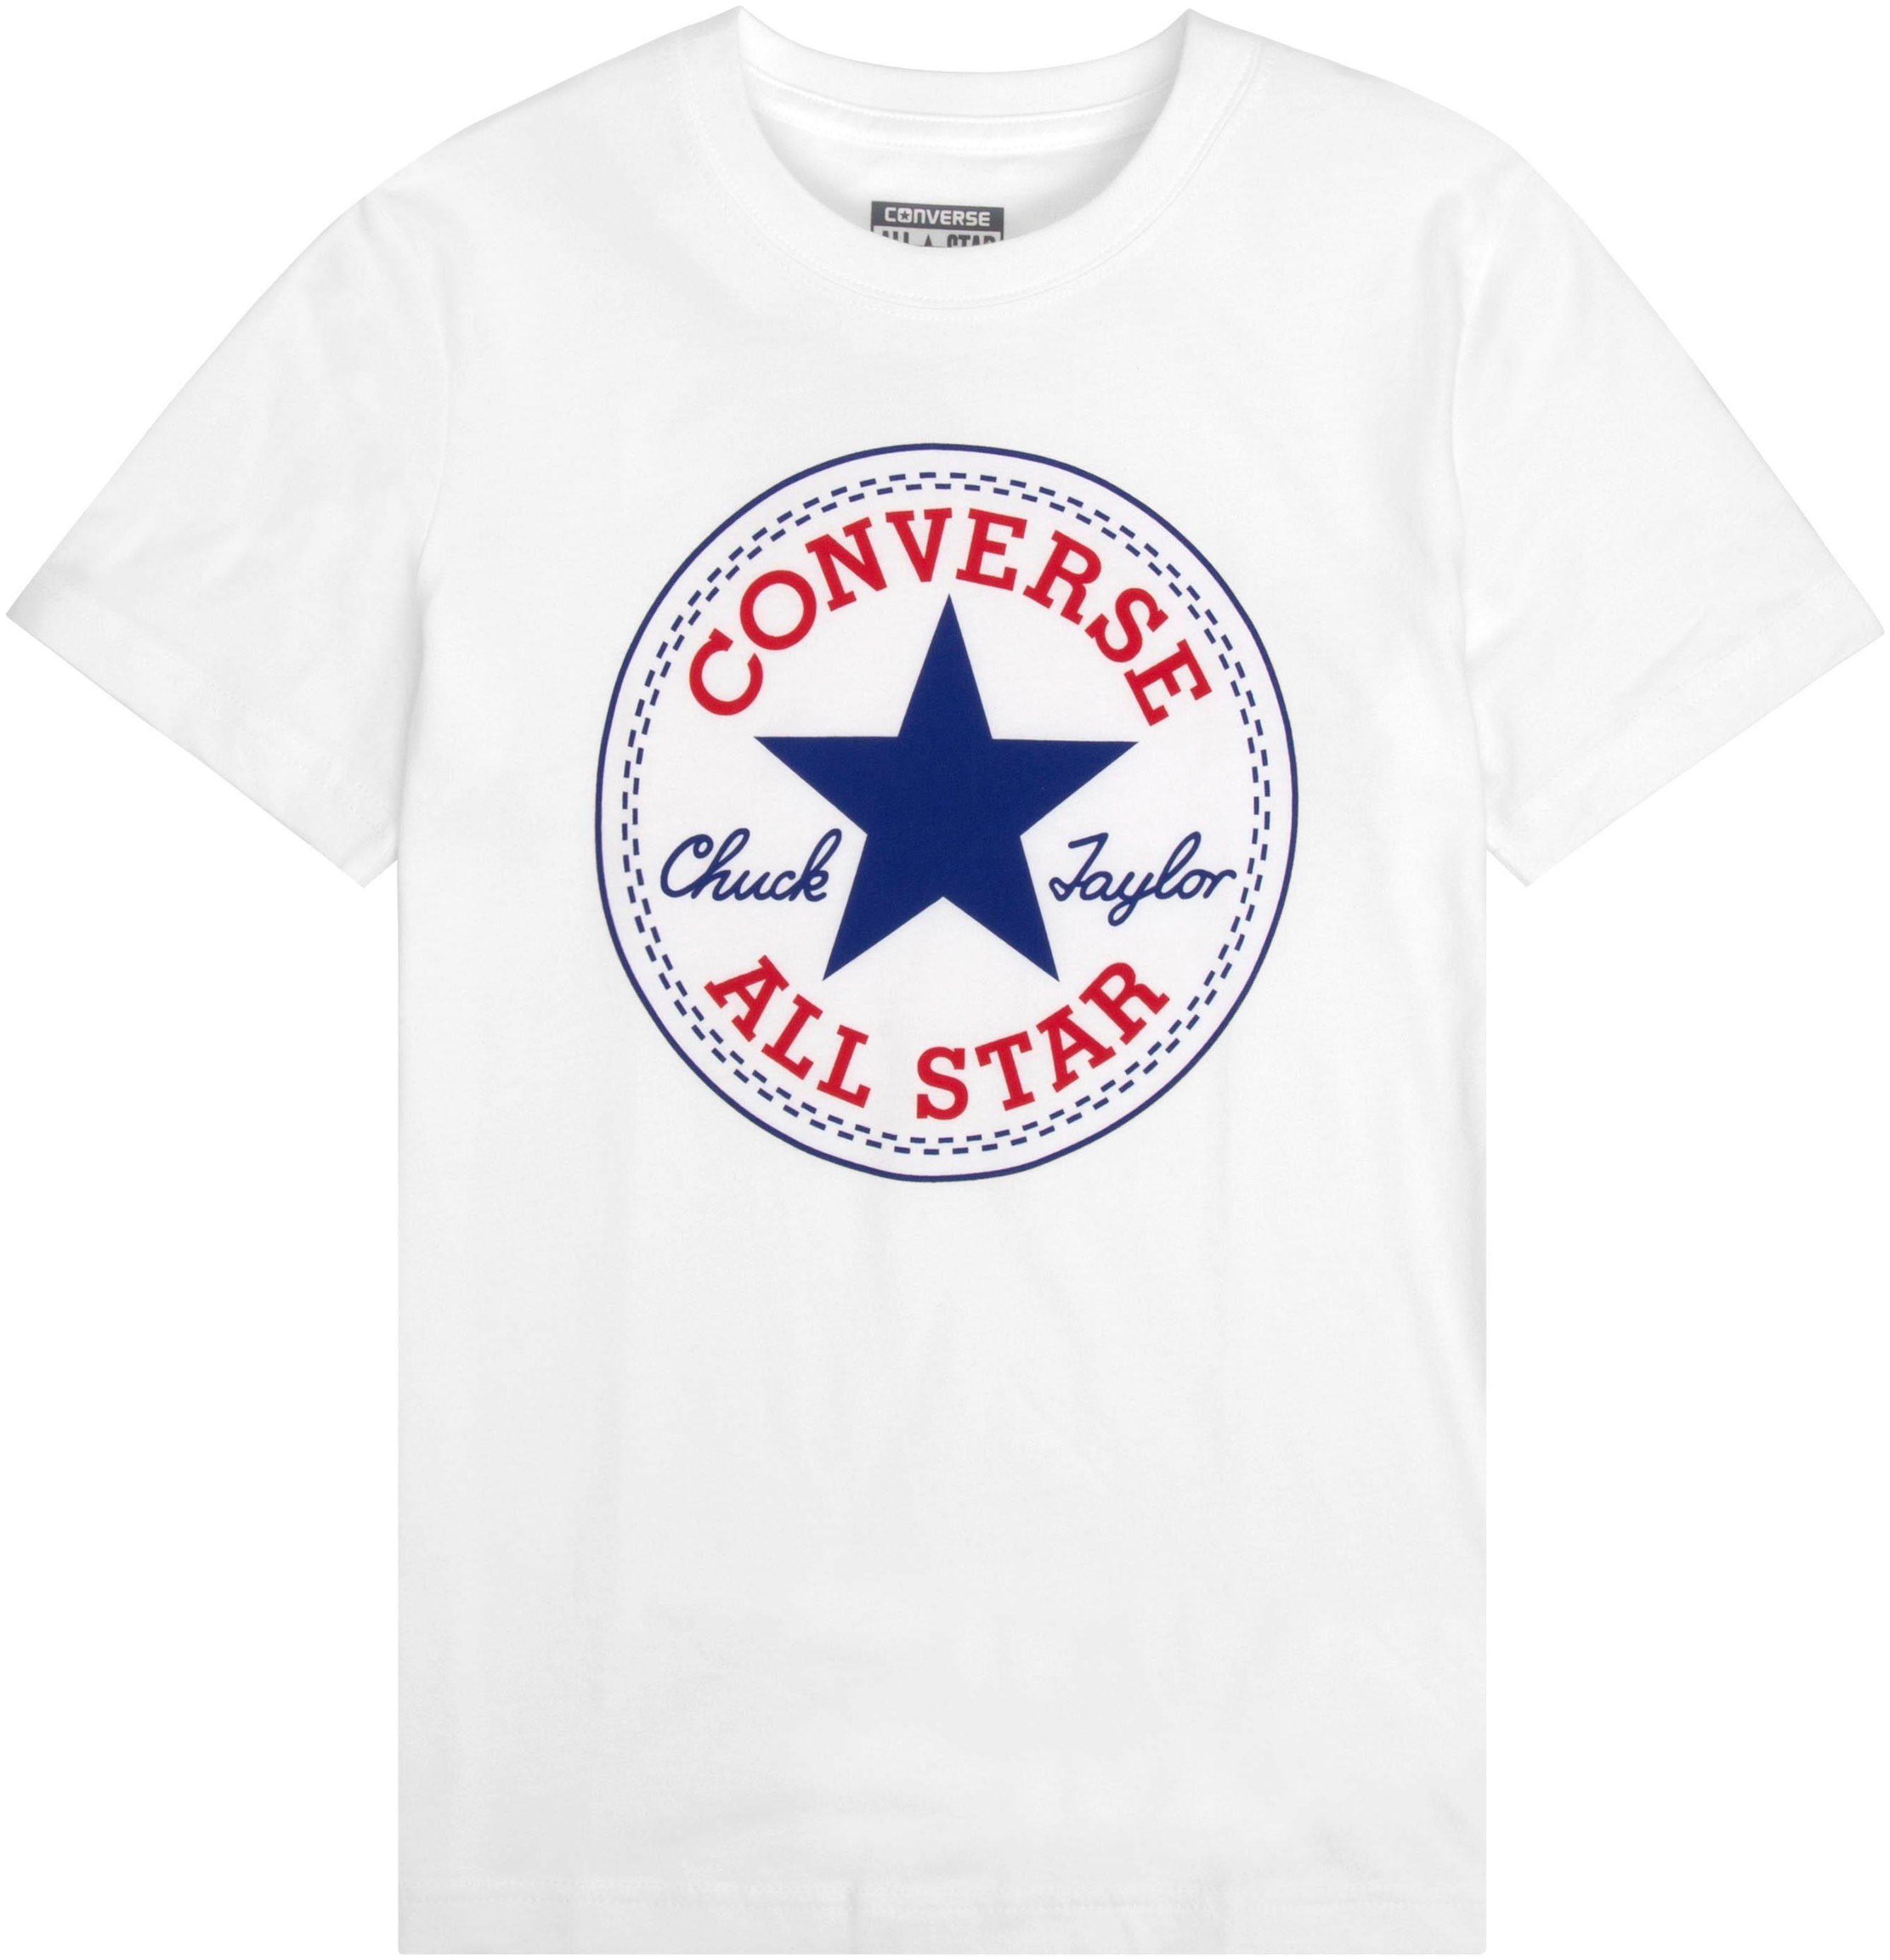 Converse Kurzarmshirt für Kinder, Brust auf Markenlabel der Converse